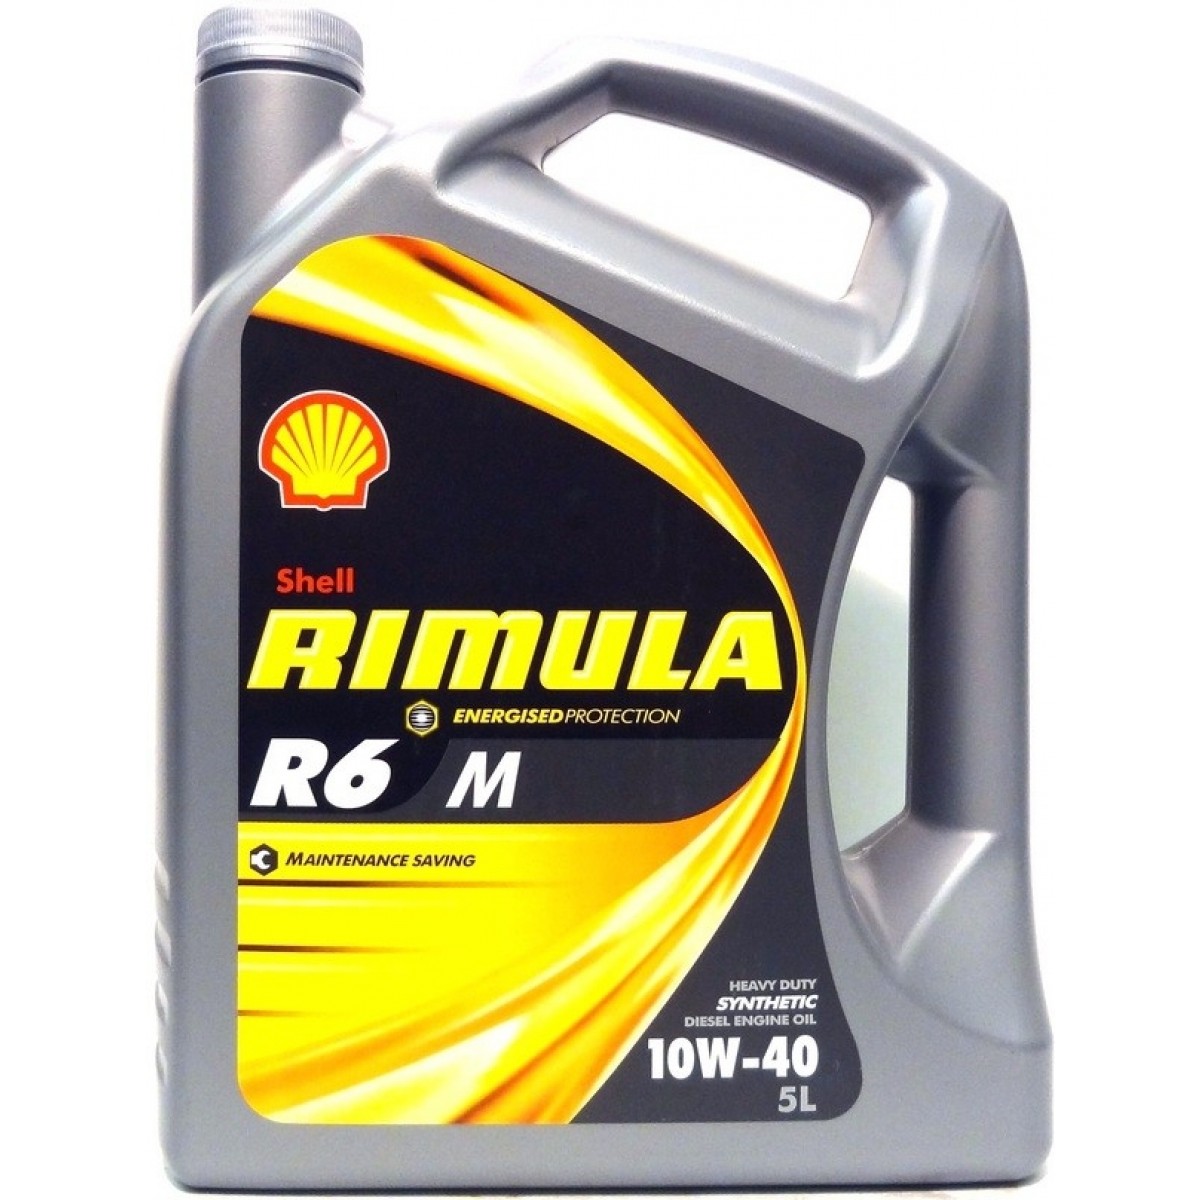 SHELL Rimula R6 М, 10w-40, синтетика, 4л, Финляндия